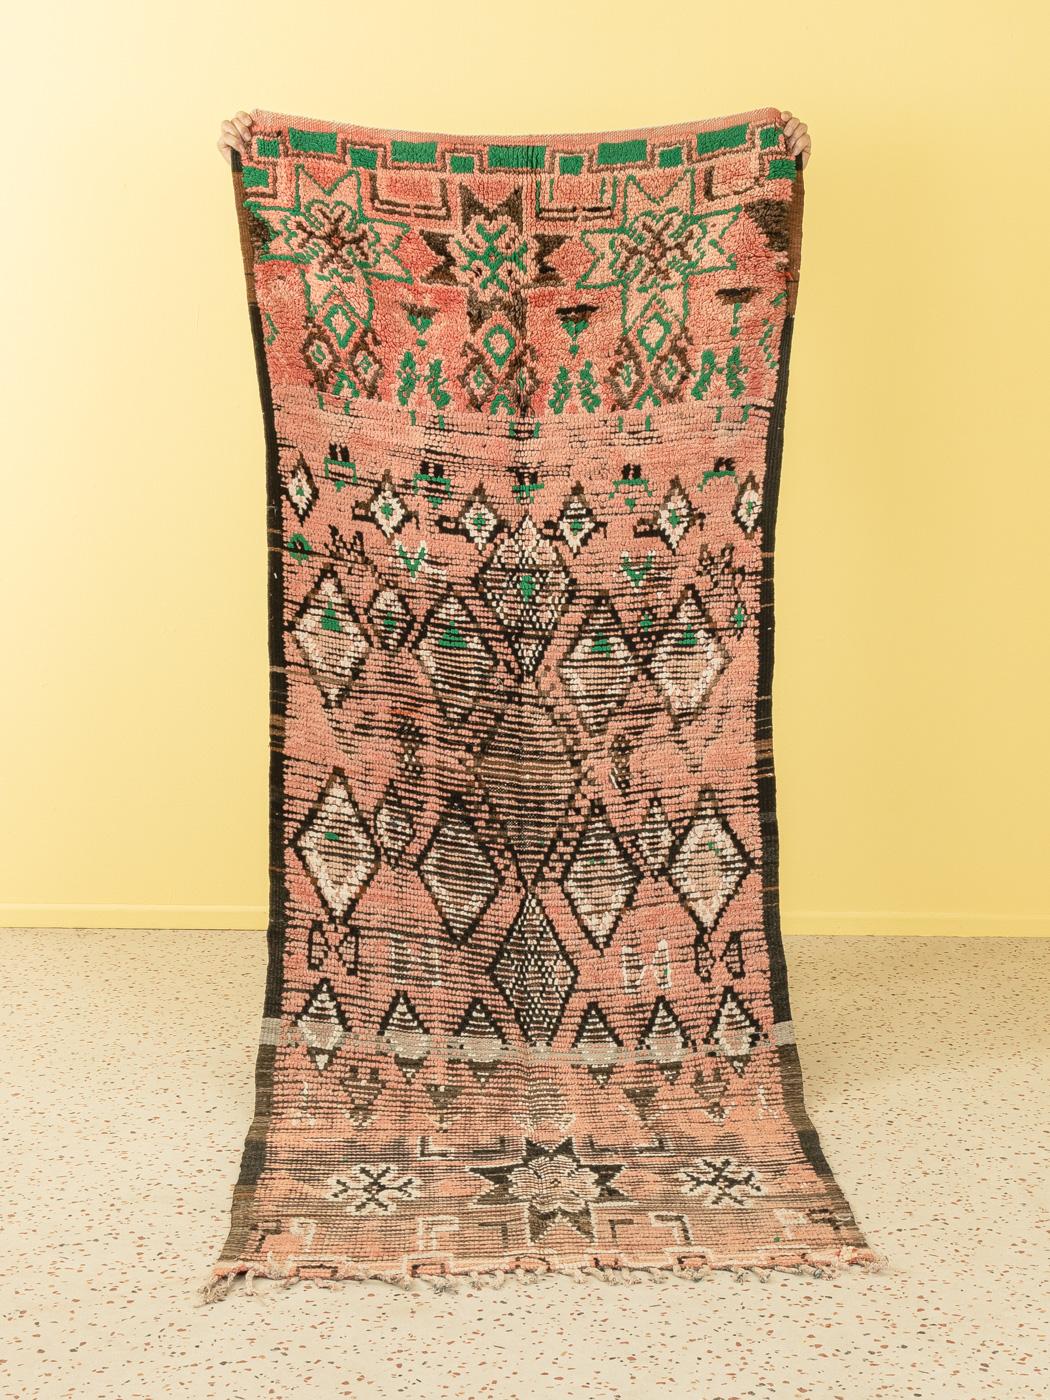 Dieser Boujad ist ein Teppich aus 100 % Vintage-Wolle - dick und weich, angenehm unter den Füßen. Unsere Berberteppiche sind handgefertigt, ein Knoten nach dem anderen. Jeder unserer Berberteppiche ist ein langlebiges Einzelstück, das auf